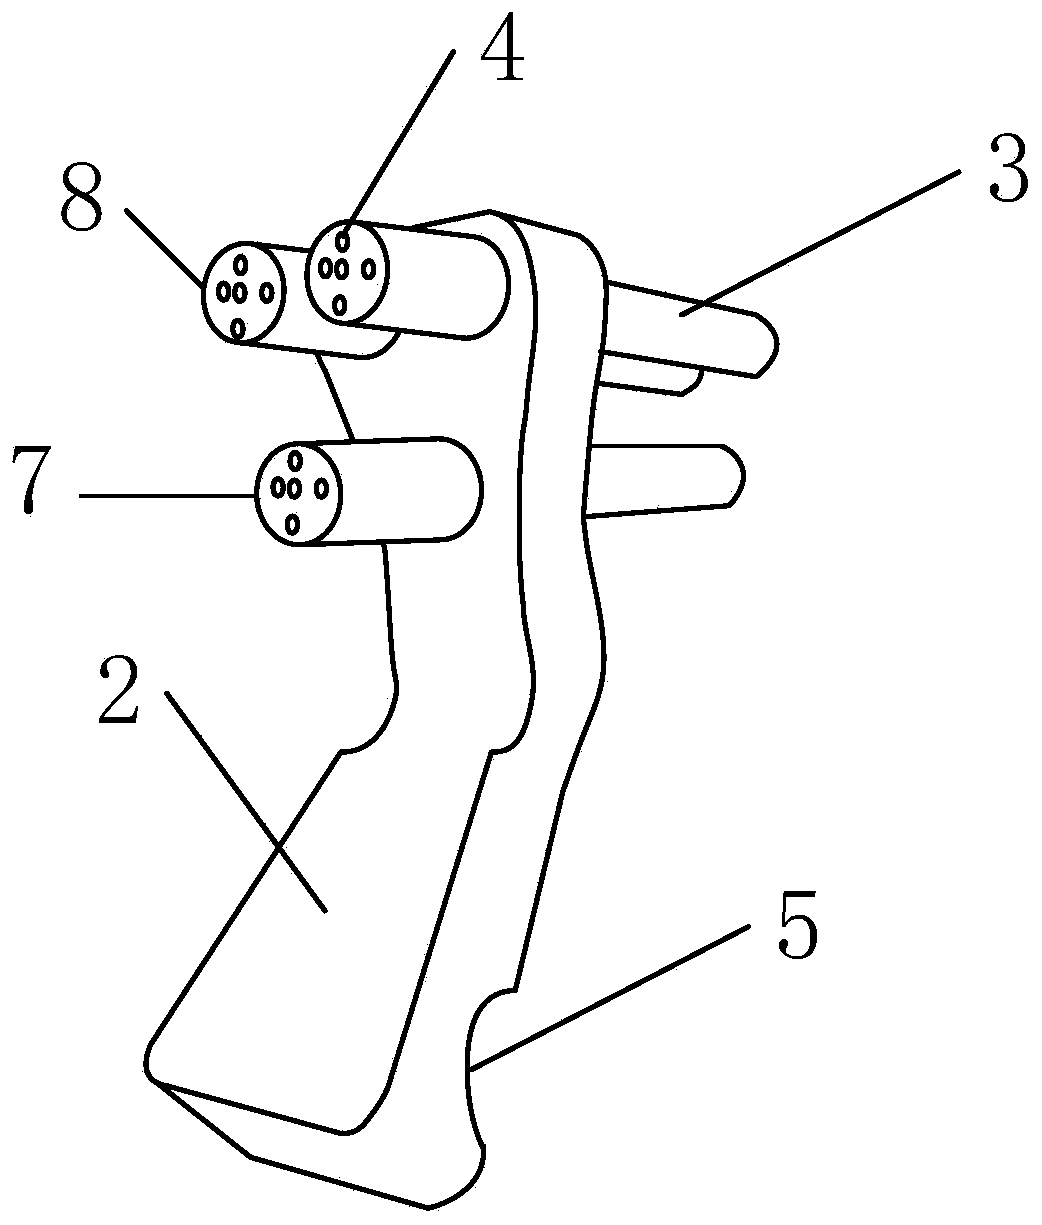 Femoral neck Kirschner-wire positioning adjusting system